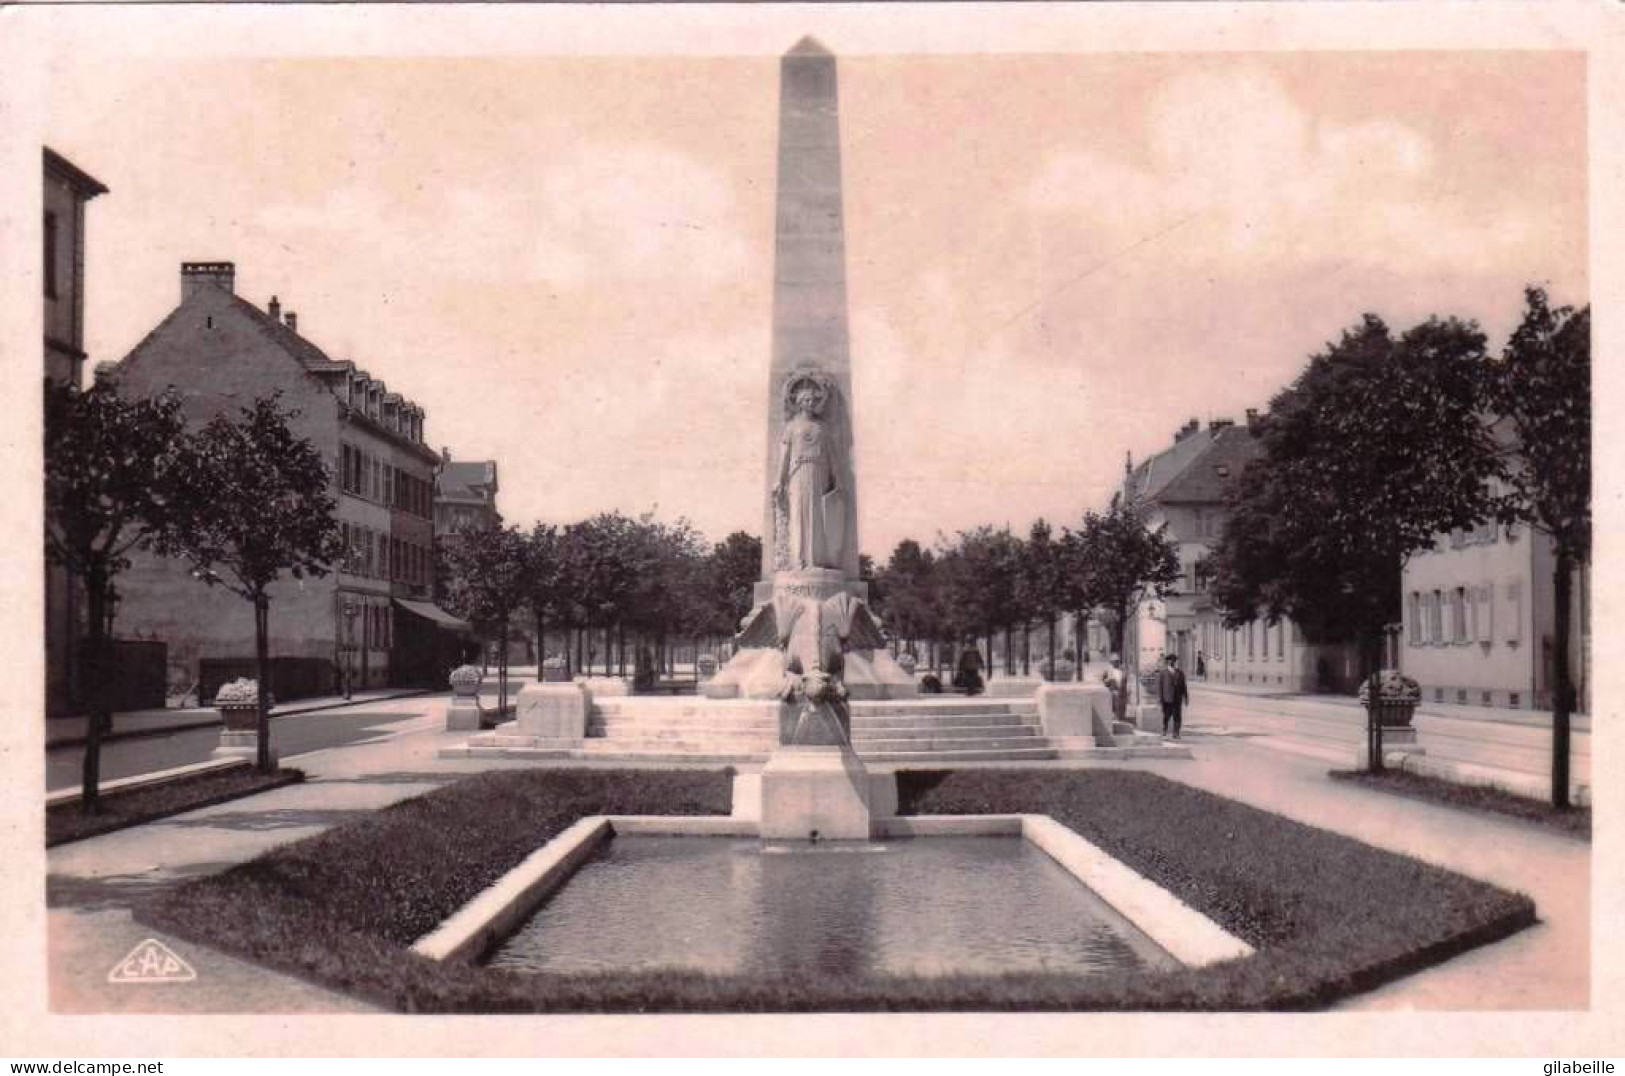 68 - Haut Rhin - MULHOUSE - MULHAUSEN - Monument Aux Morts De La Grande Guerre - Mulhouse